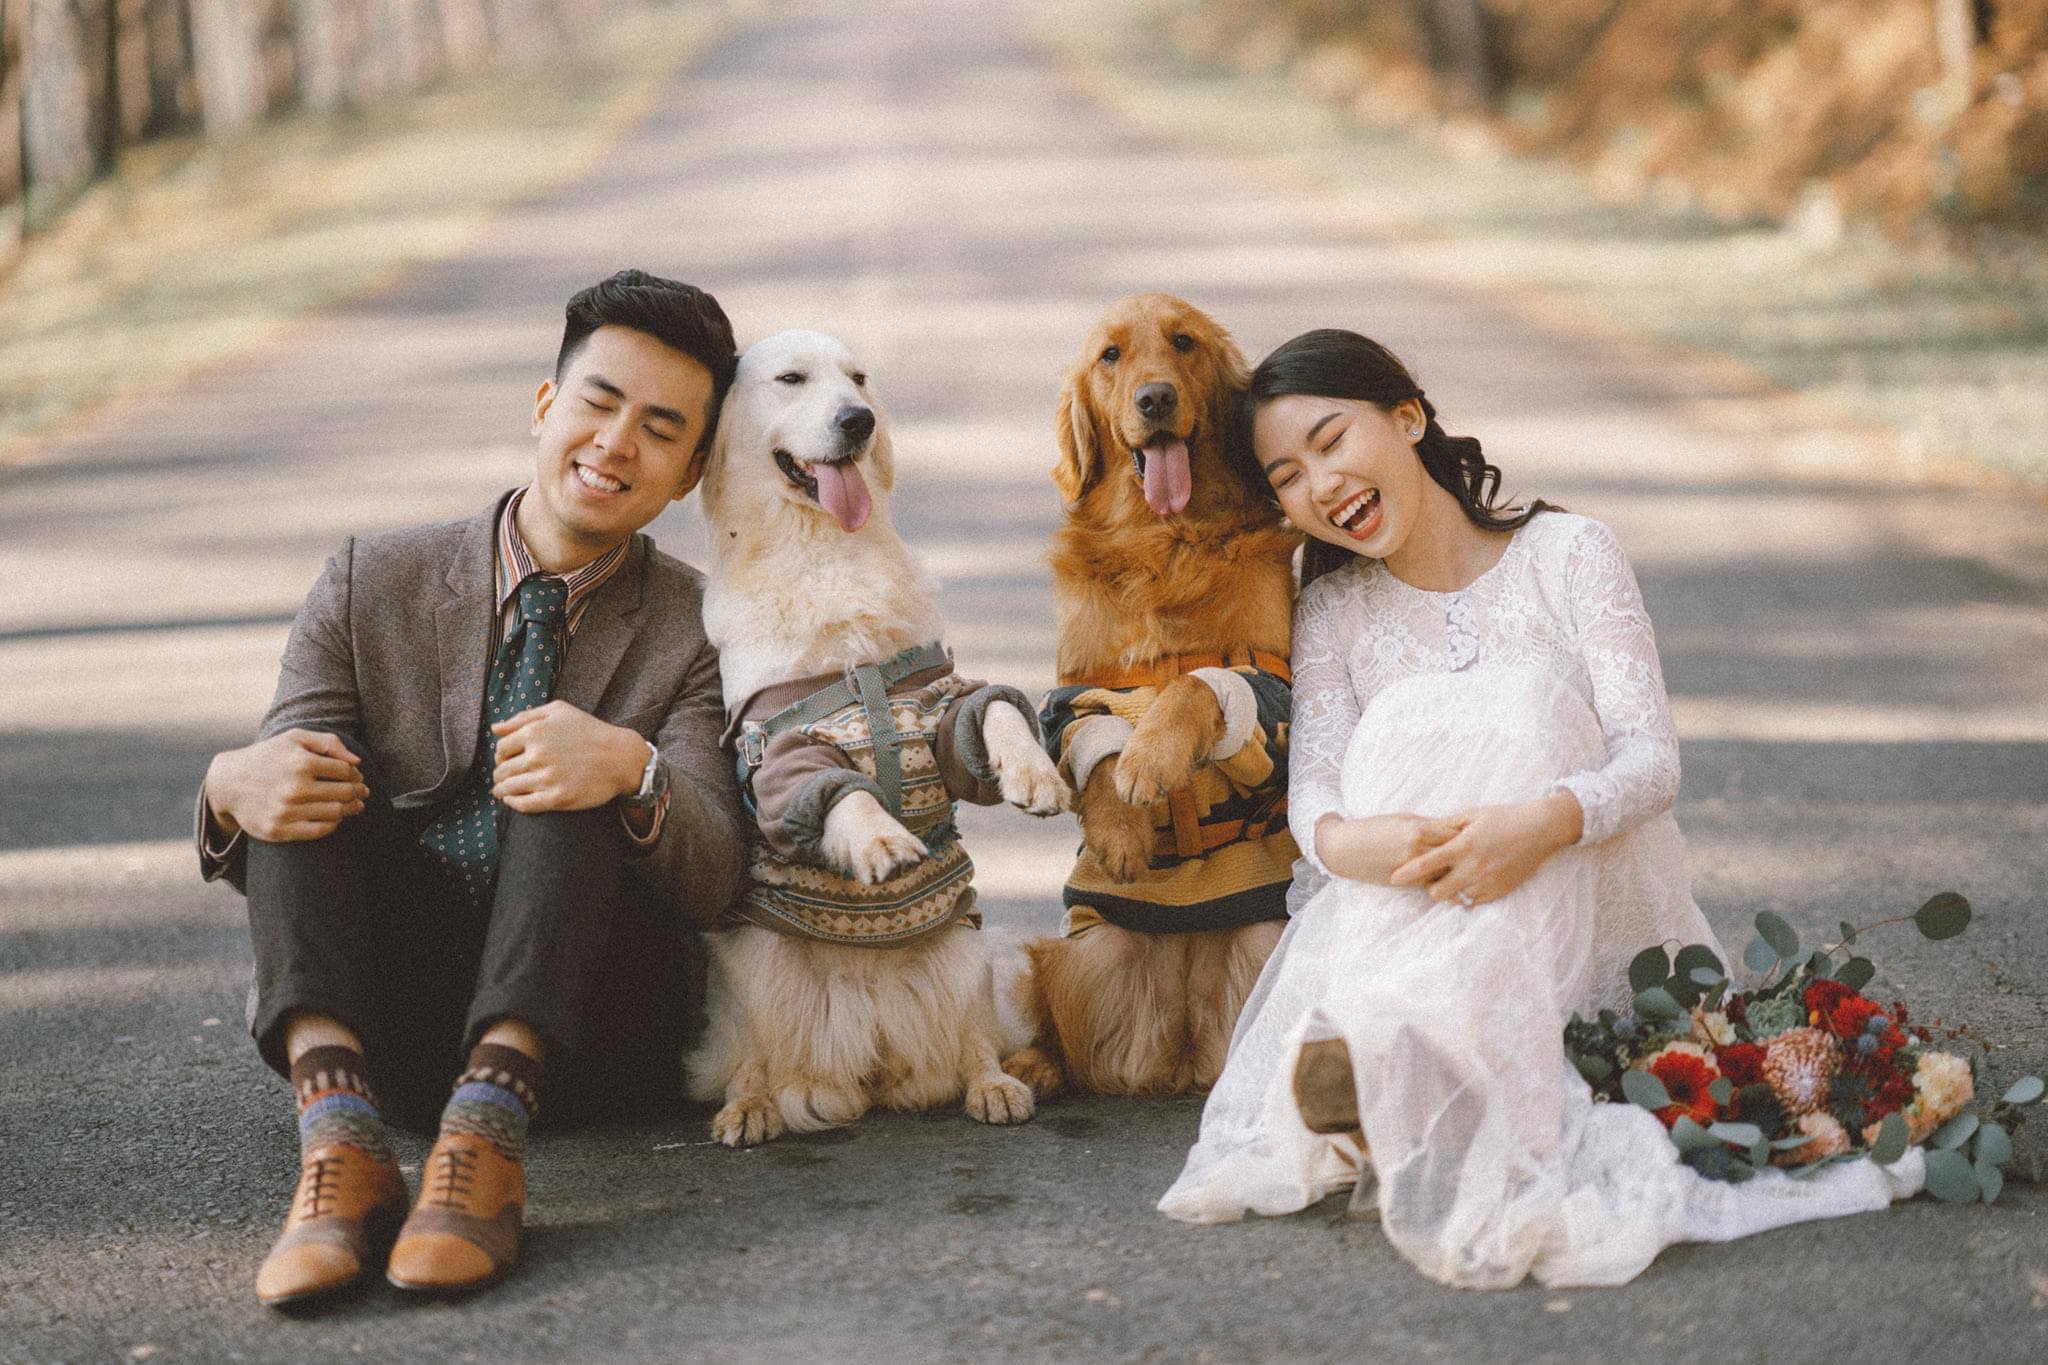 Chụp ảnh cưới với cún cưng là một ý tưởng rất đáng yêu để thể hiện tình yêu và sự gắn bó trong gia đình. Với sự hợp tác giữa nhiếp ảnh gia và những chú thú cưng đáng yêu, bạn sẽ có những bức ảnh đầy hạnh phúc để lưu giữ những kỷ niệm đẹp trong đời.